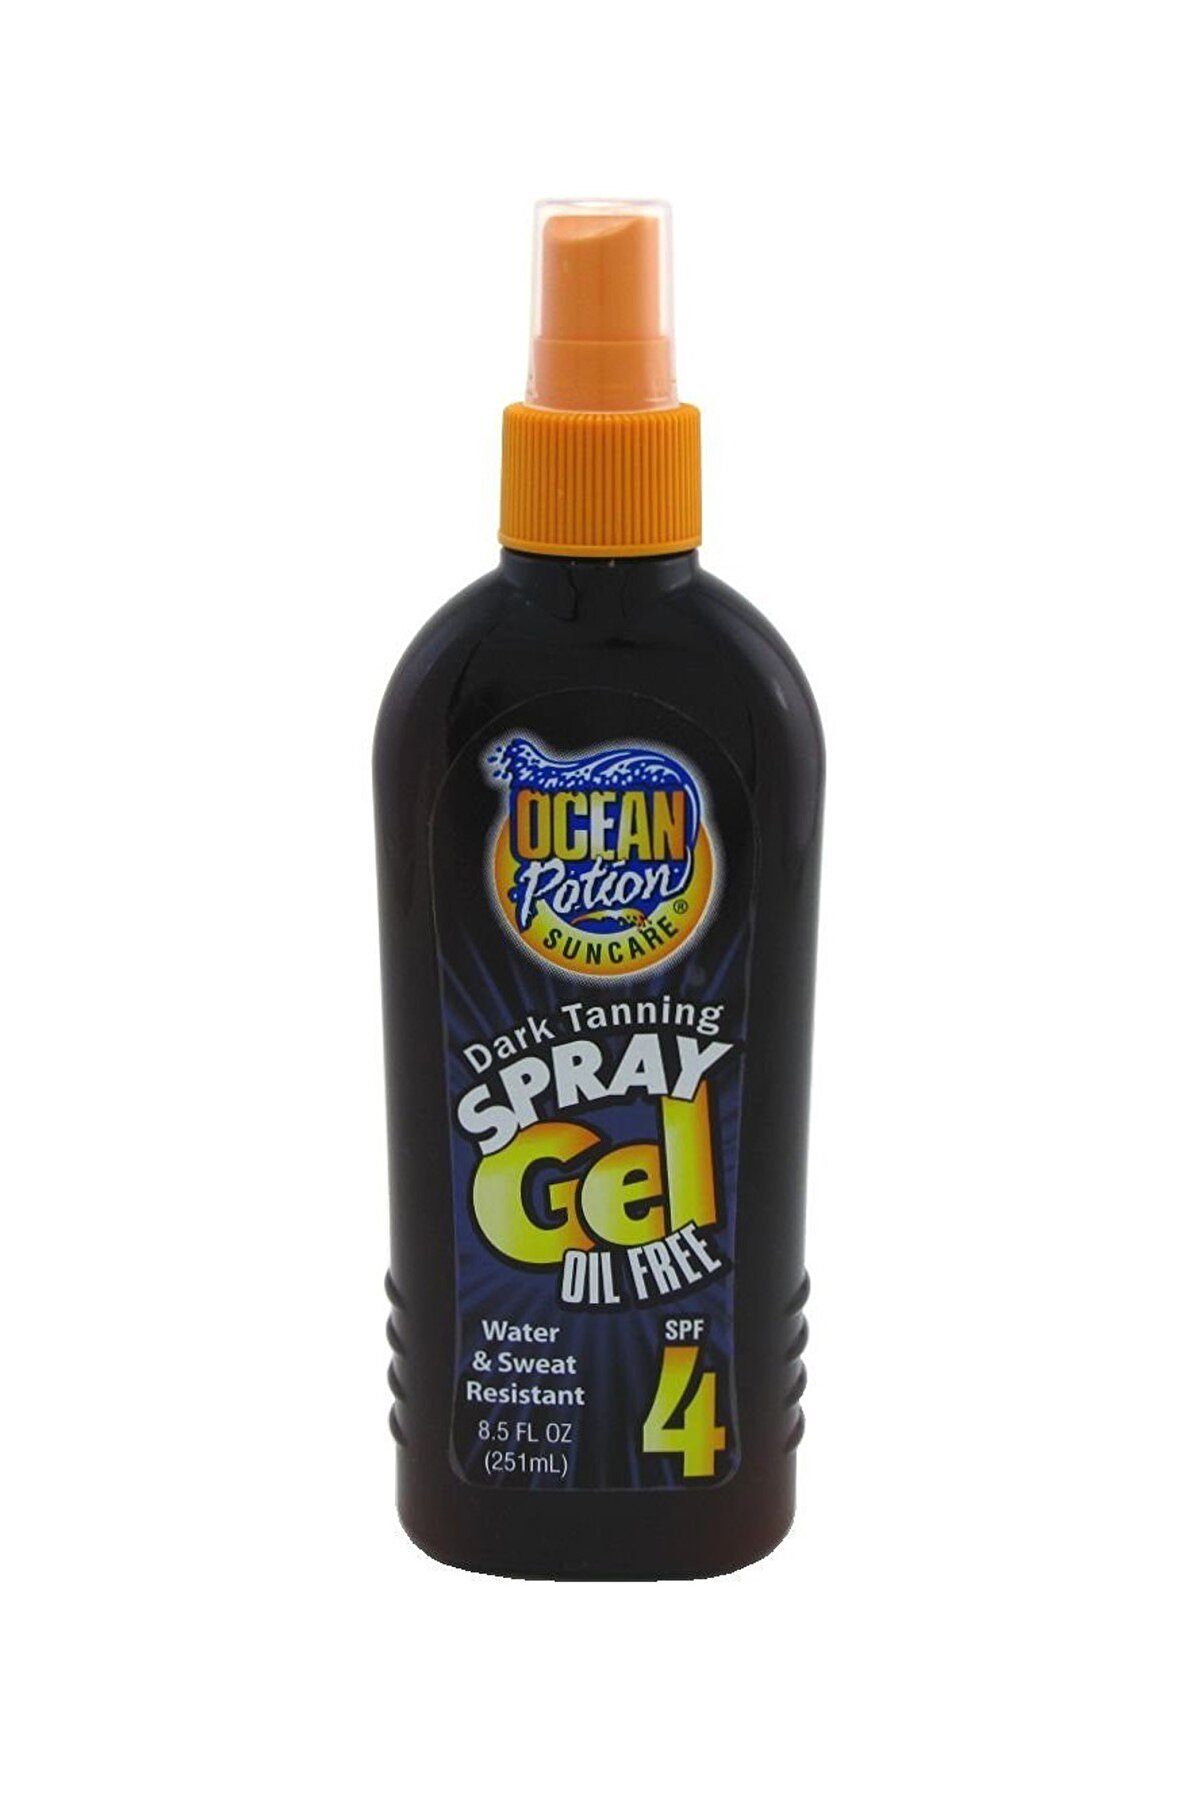 Ocean Potion Bronzlaştırıcı Sprey Jel - Spray Gel Spf 4 Oil Free 251 ml 000774000350